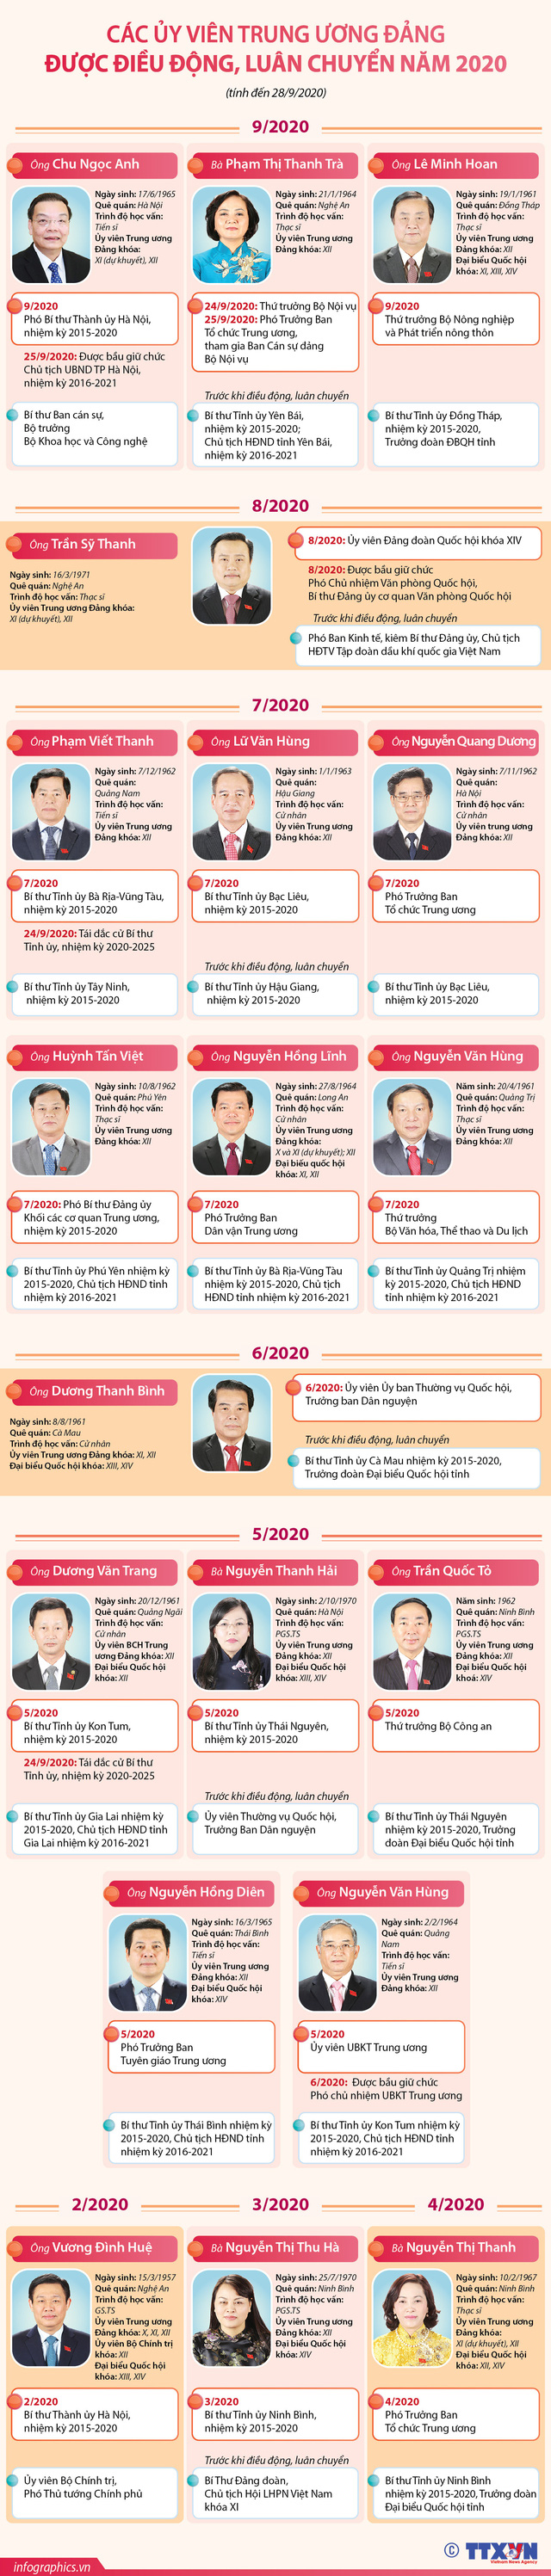 [INFOGRAPHIC] 19 Ủy viên Trung ương Đảng được điều động, luân chuyển năm 2020 - Ảnh 1.